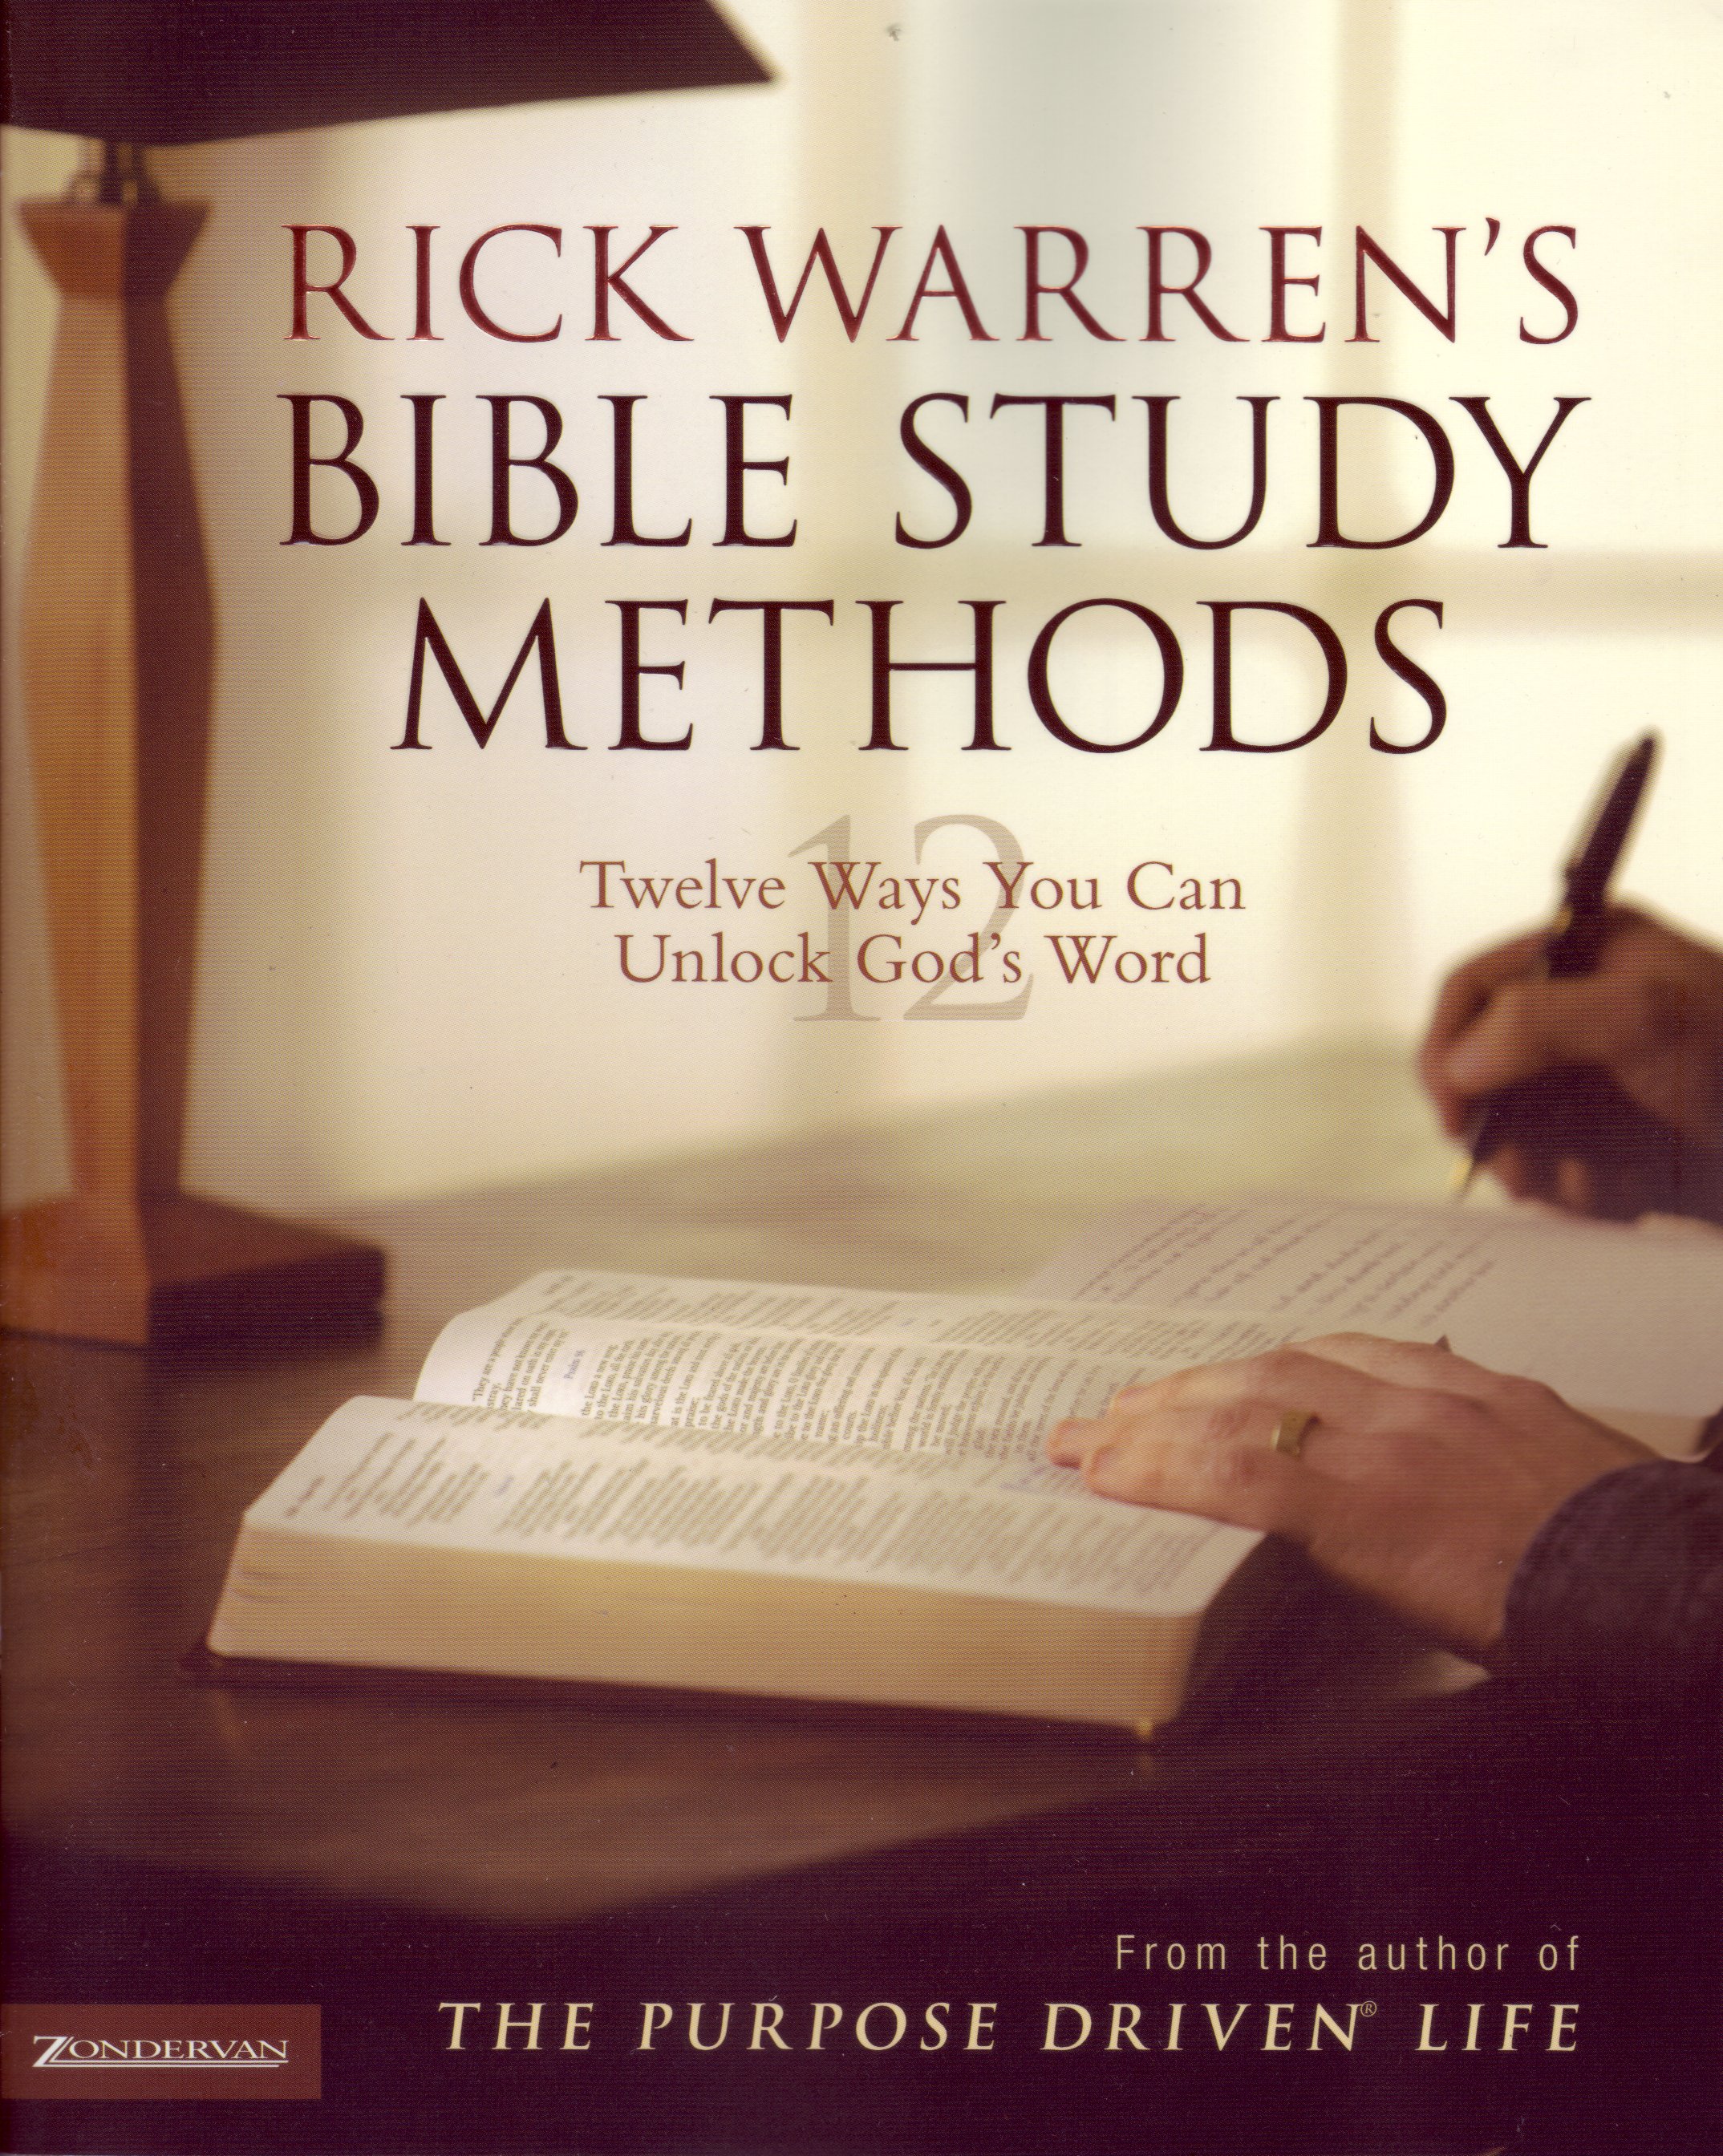 RICK WARREN'S BIBLE STUDY METHODS